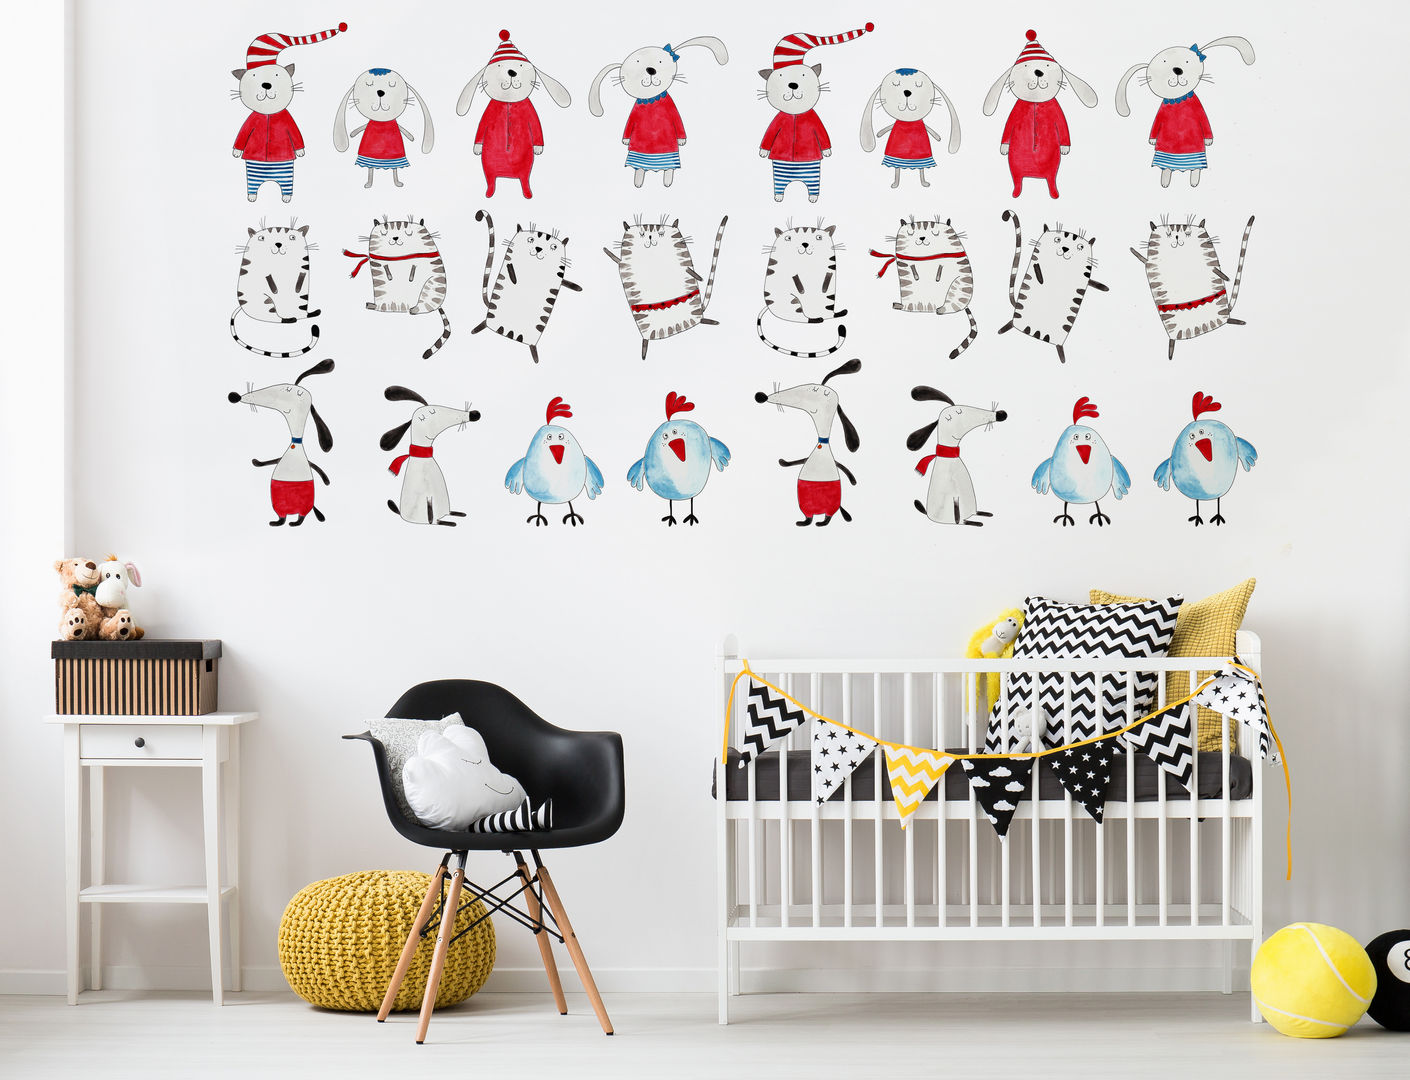 Little Friends Pixers Minimalistyczny pokój dziecięcy wall mural,wallpaper,kid,child,animals,drawing